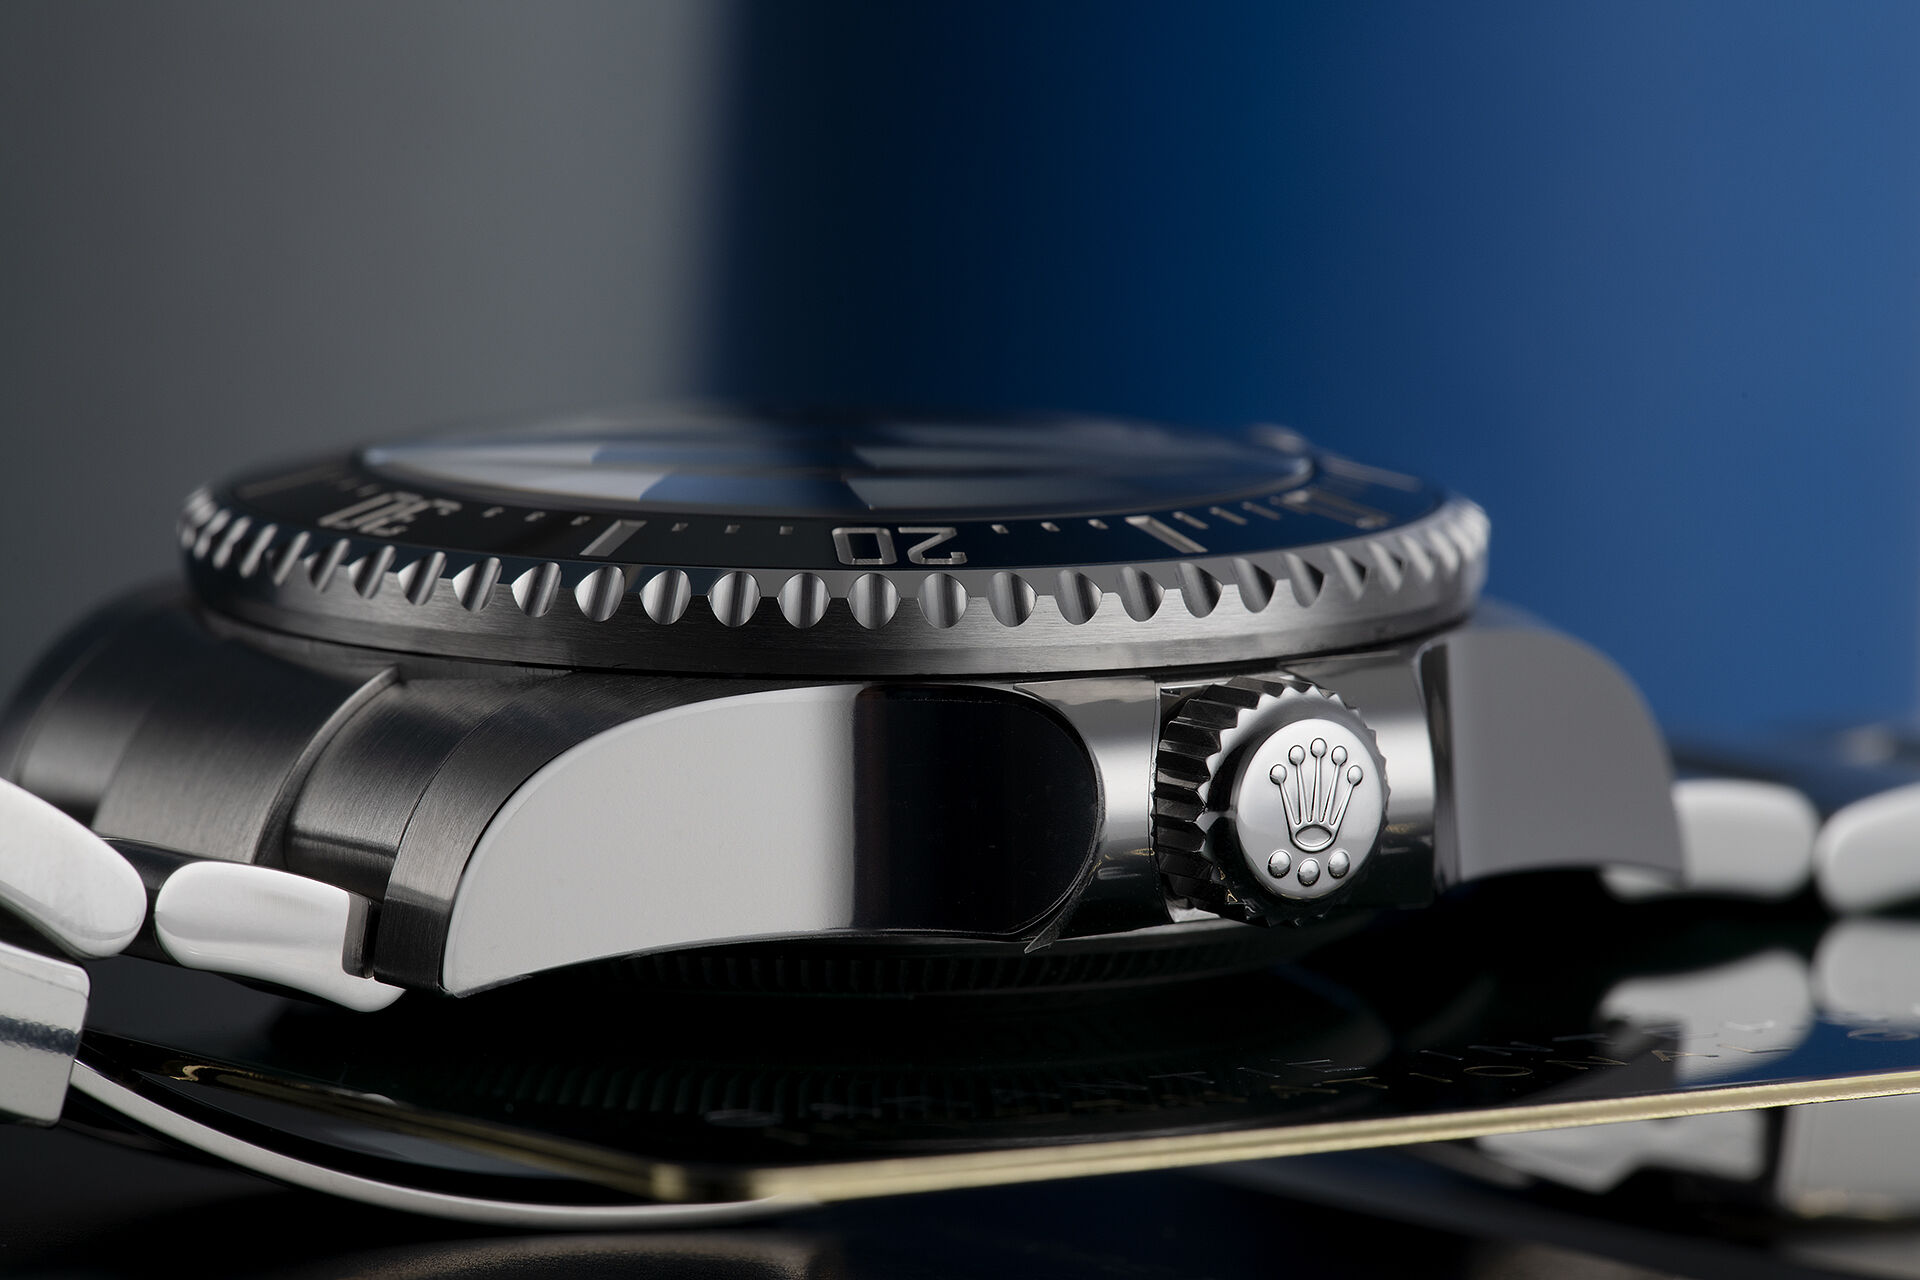 ref 126660 | Brand New '5 Year Warranty' | Rolex Sea-Dweller Deepsea